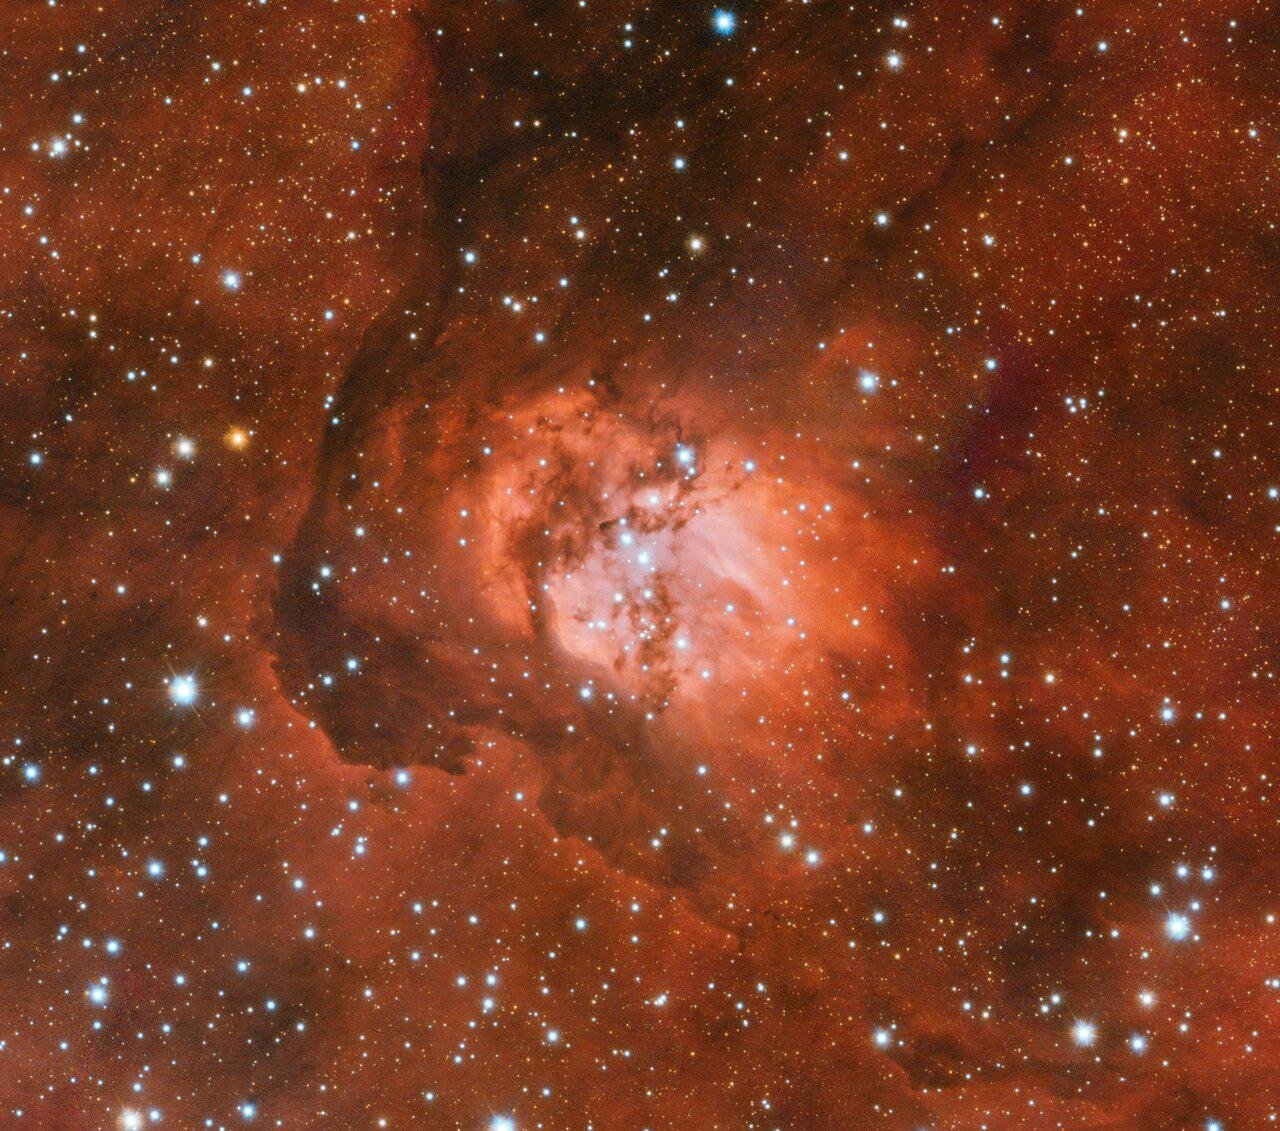 Imagem em luz visível da nebulosa Sh2-54 capturada pelo VLT Survey Telescope. (Fonte: ESO/Divulgação.)